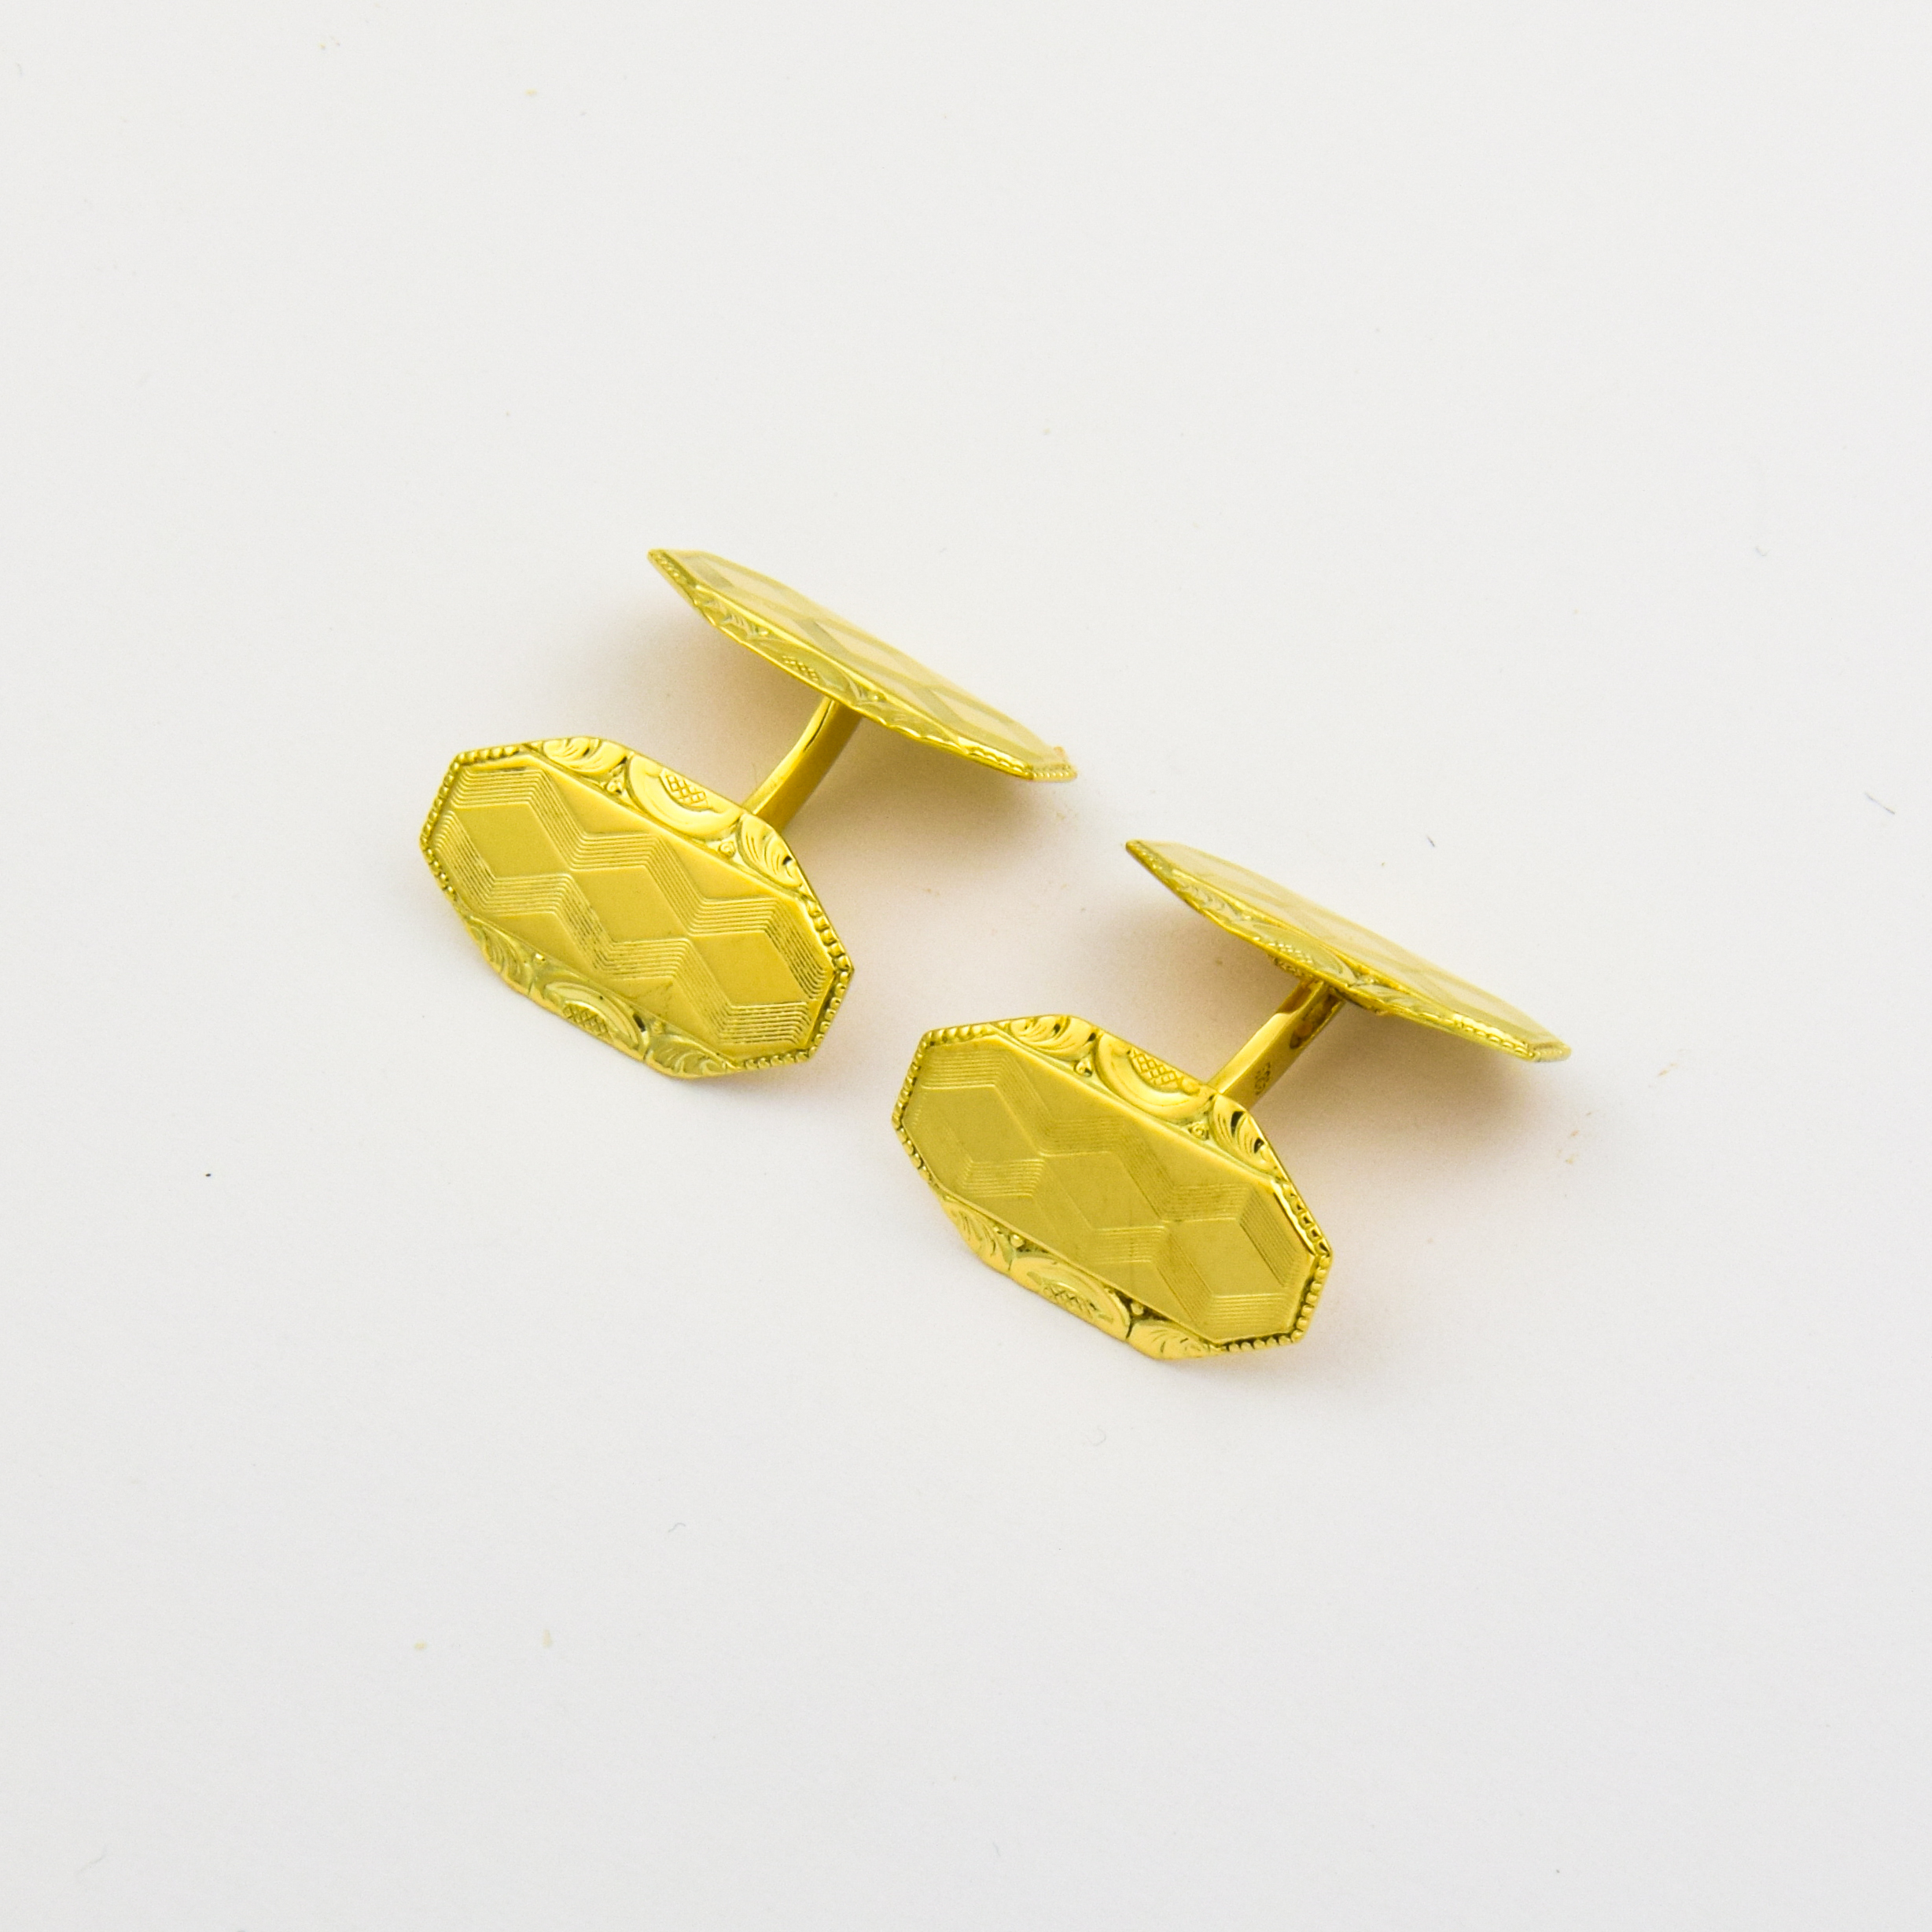 Manschettenknöpfe aus 585 Gelbgold, nachhaltiger second hand Schmuck perfekt aufgearbeitet